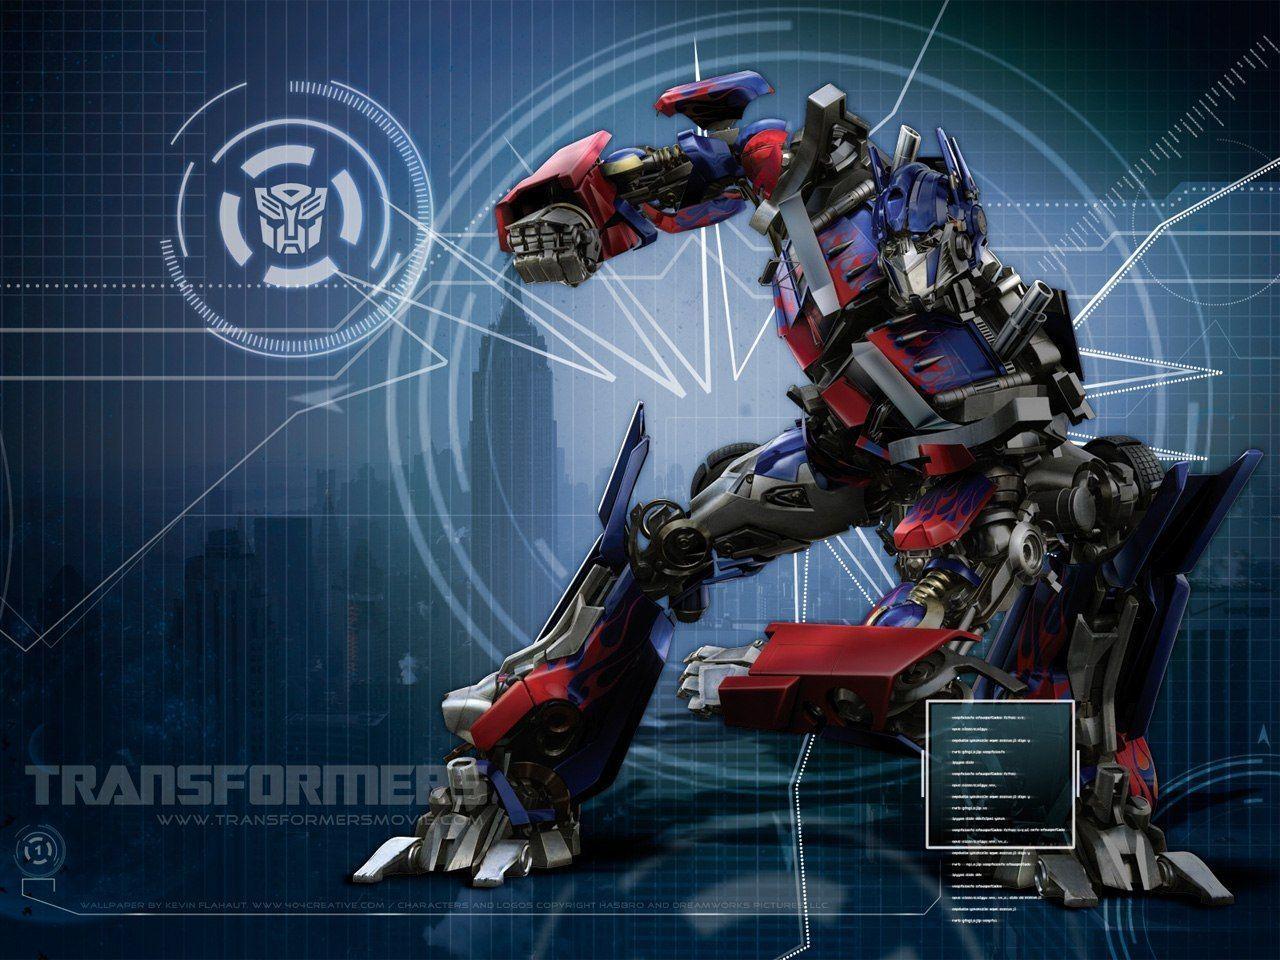 Transformers 2 Optimus Prime Wallpaper